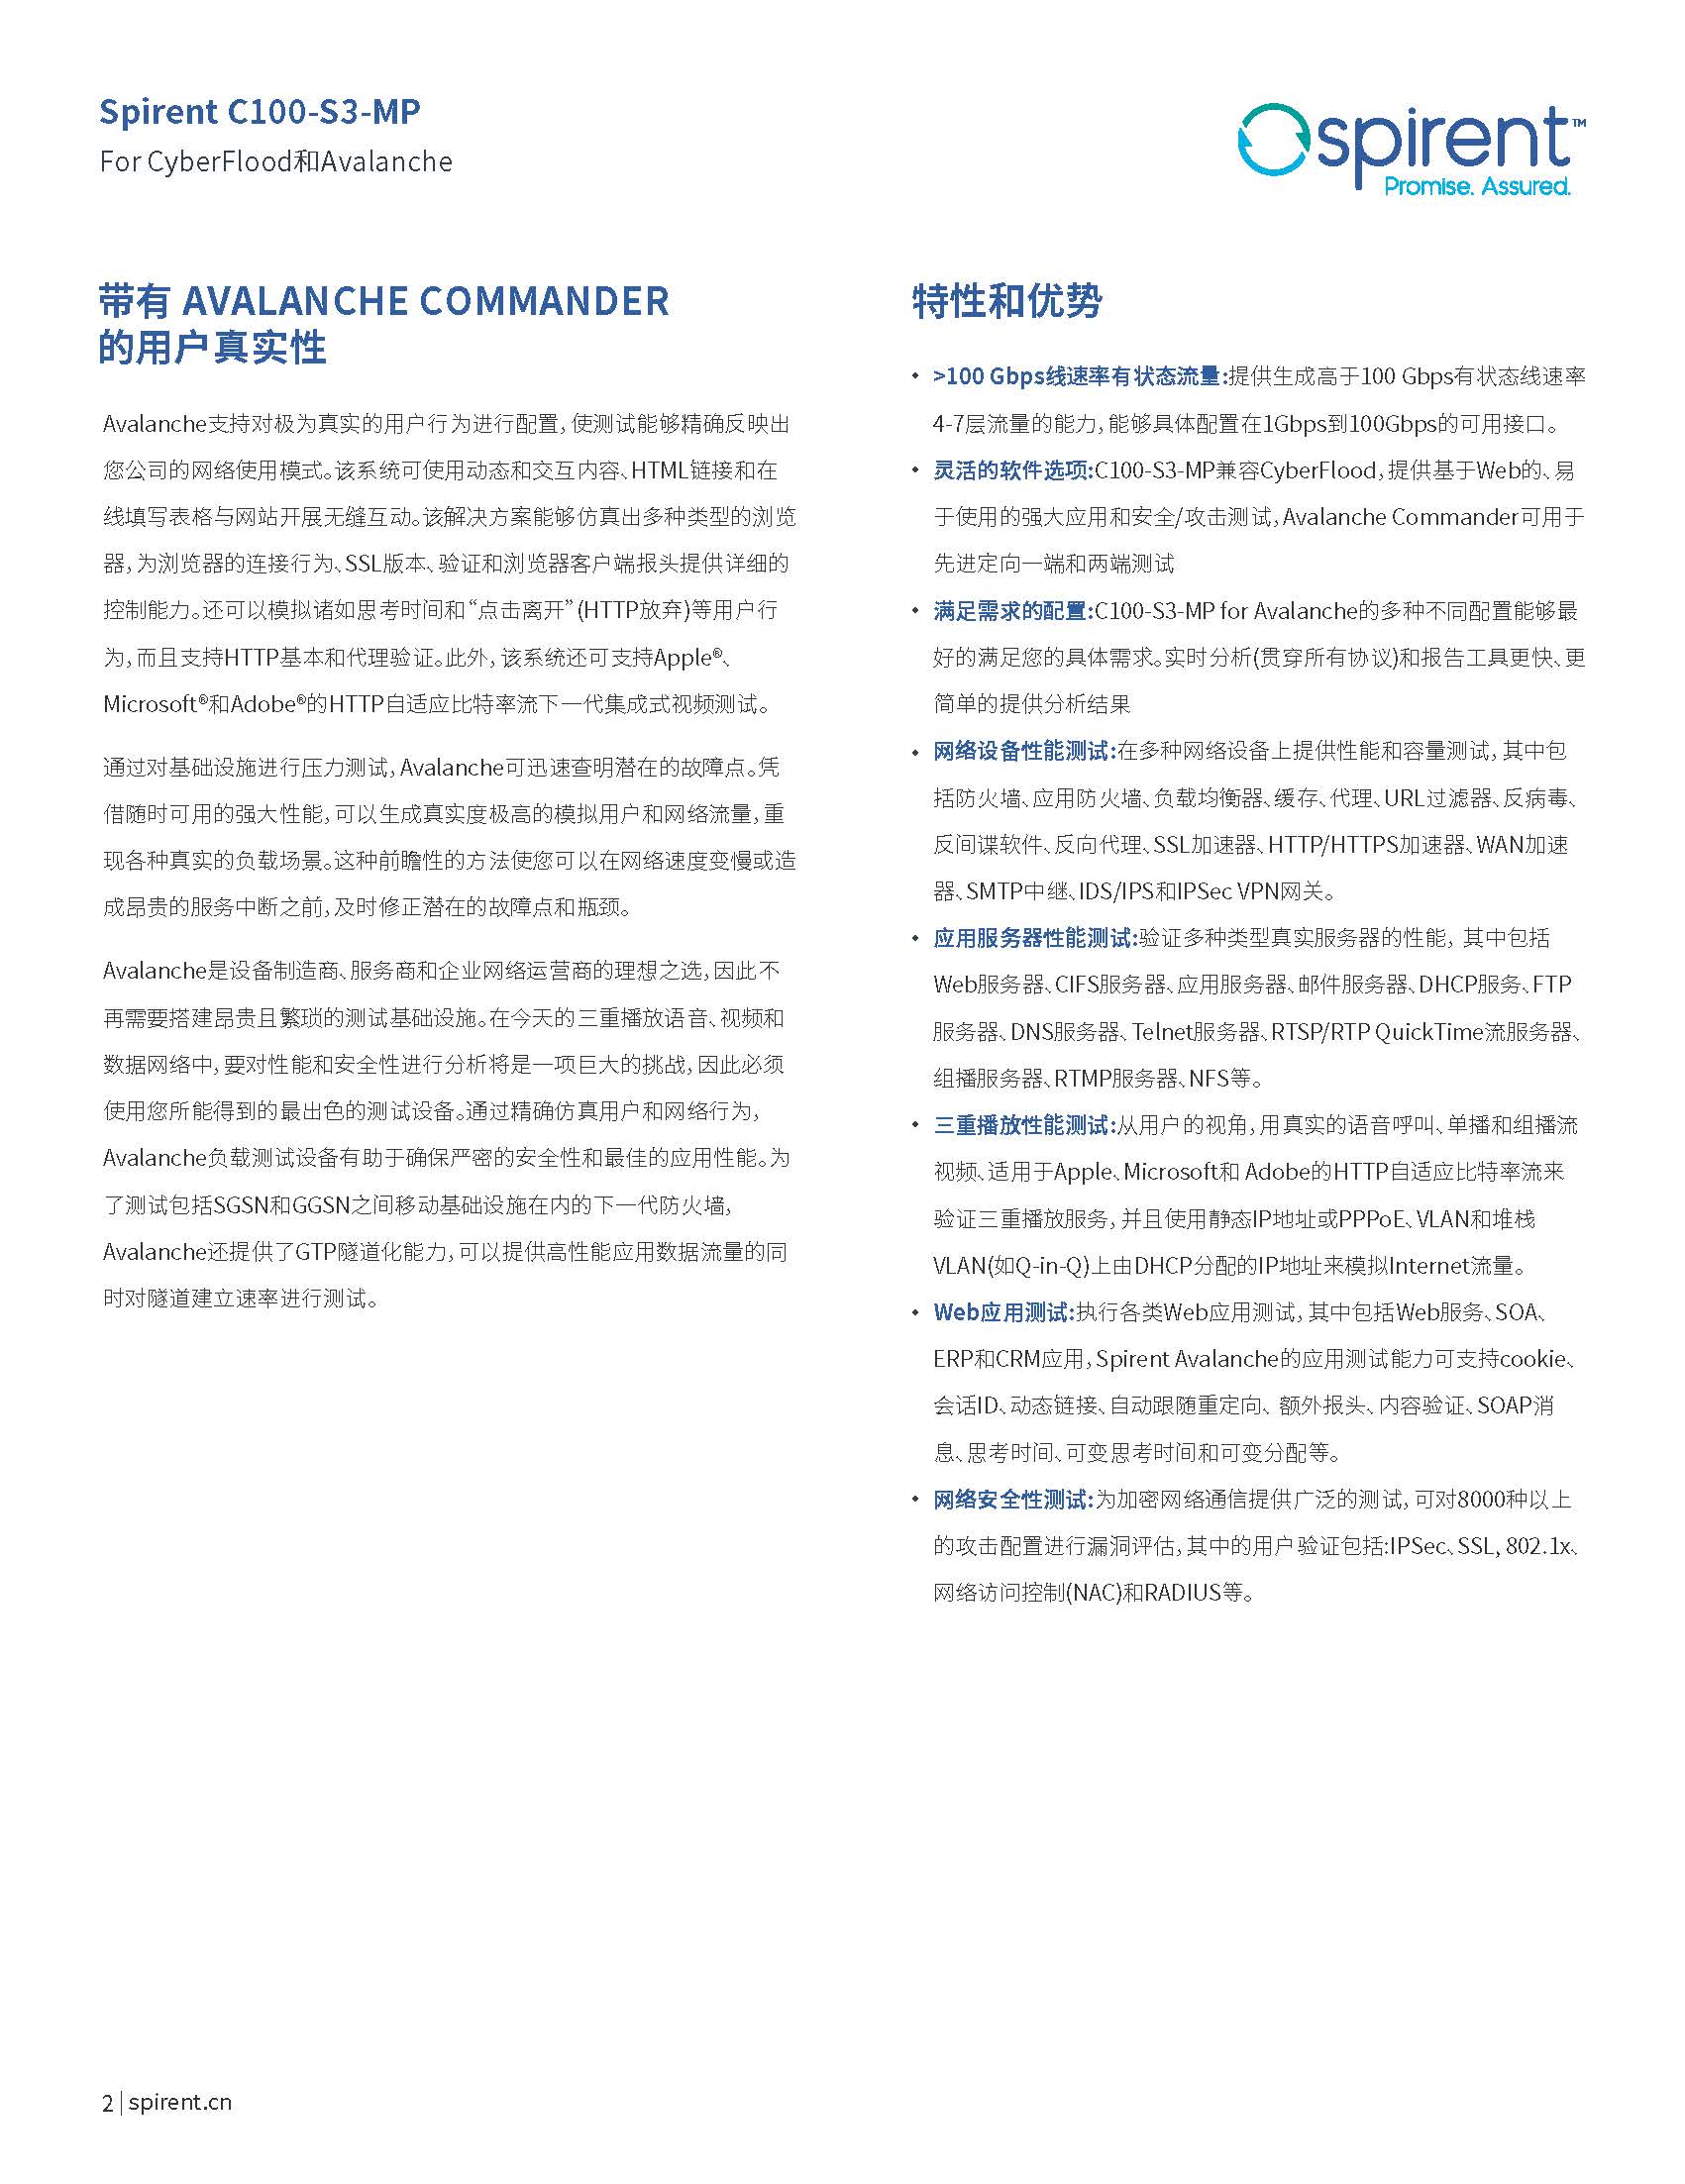 中文更新-23_C100_for_Avalanche_CN_202006(1)_页面_2.jpg